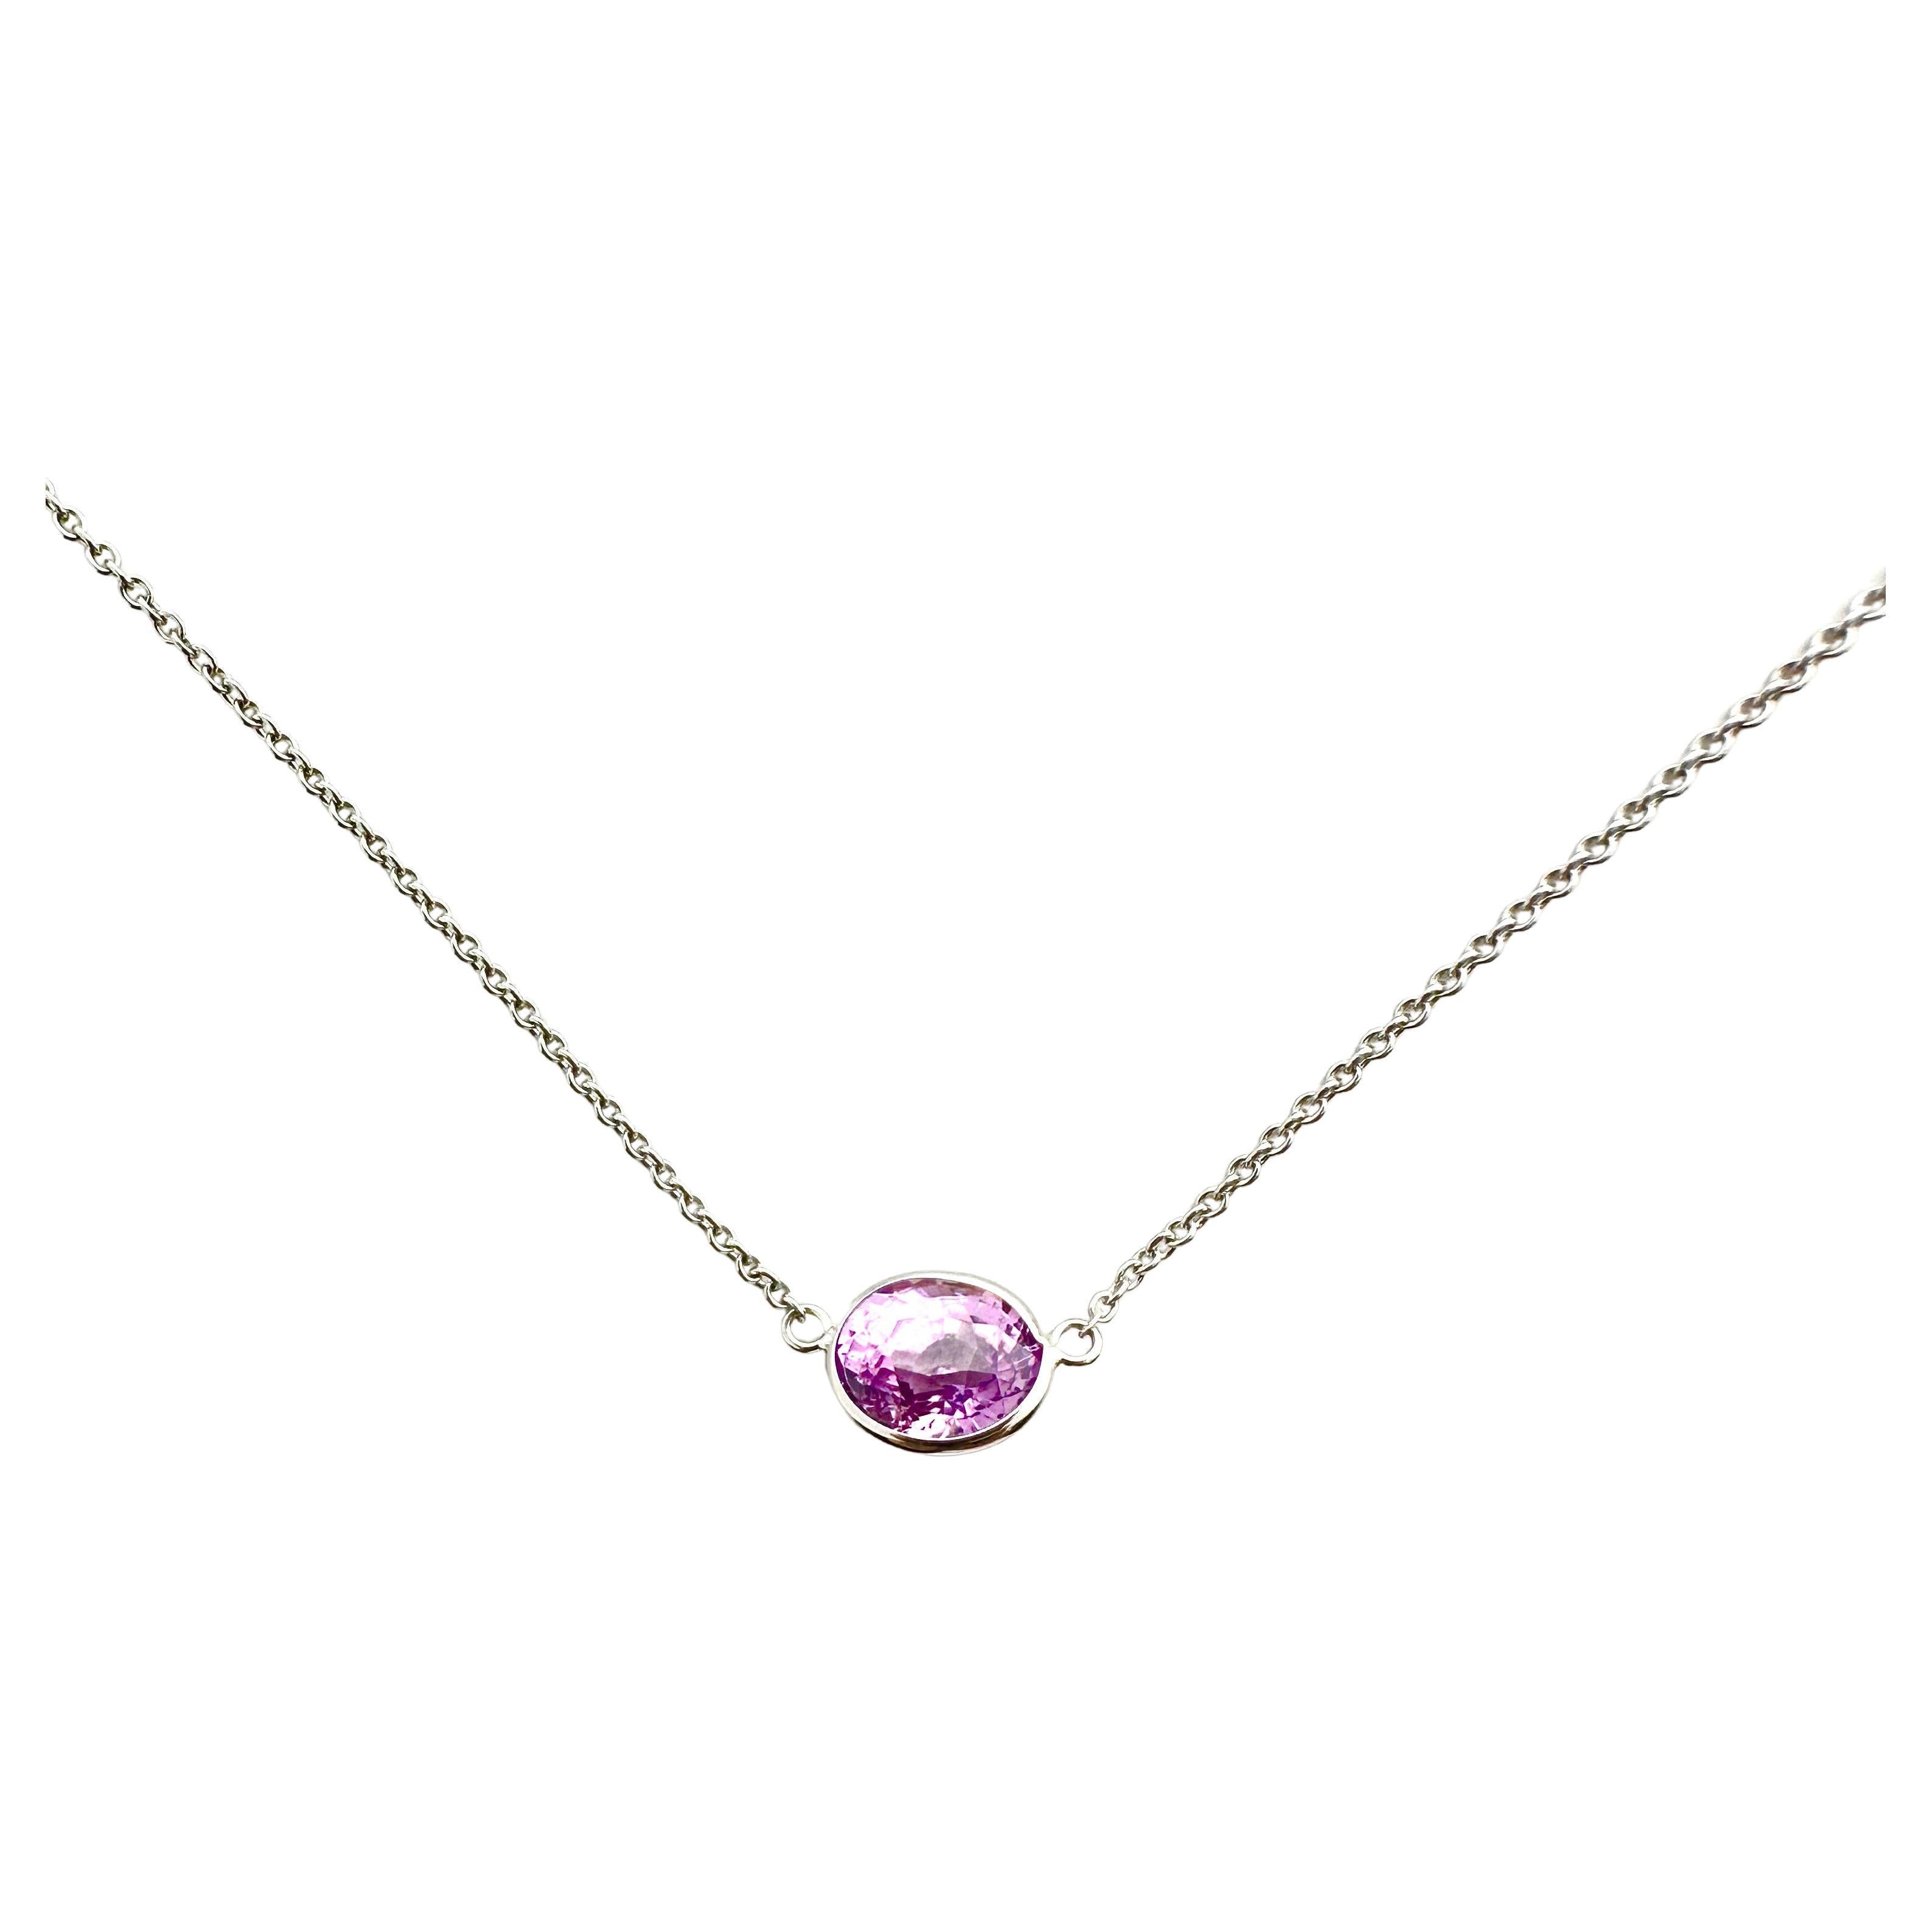 2.20 Carat Sapphire Purple Oval & Fashion Necklaces Berberyn Certified In 14K WG For Sale